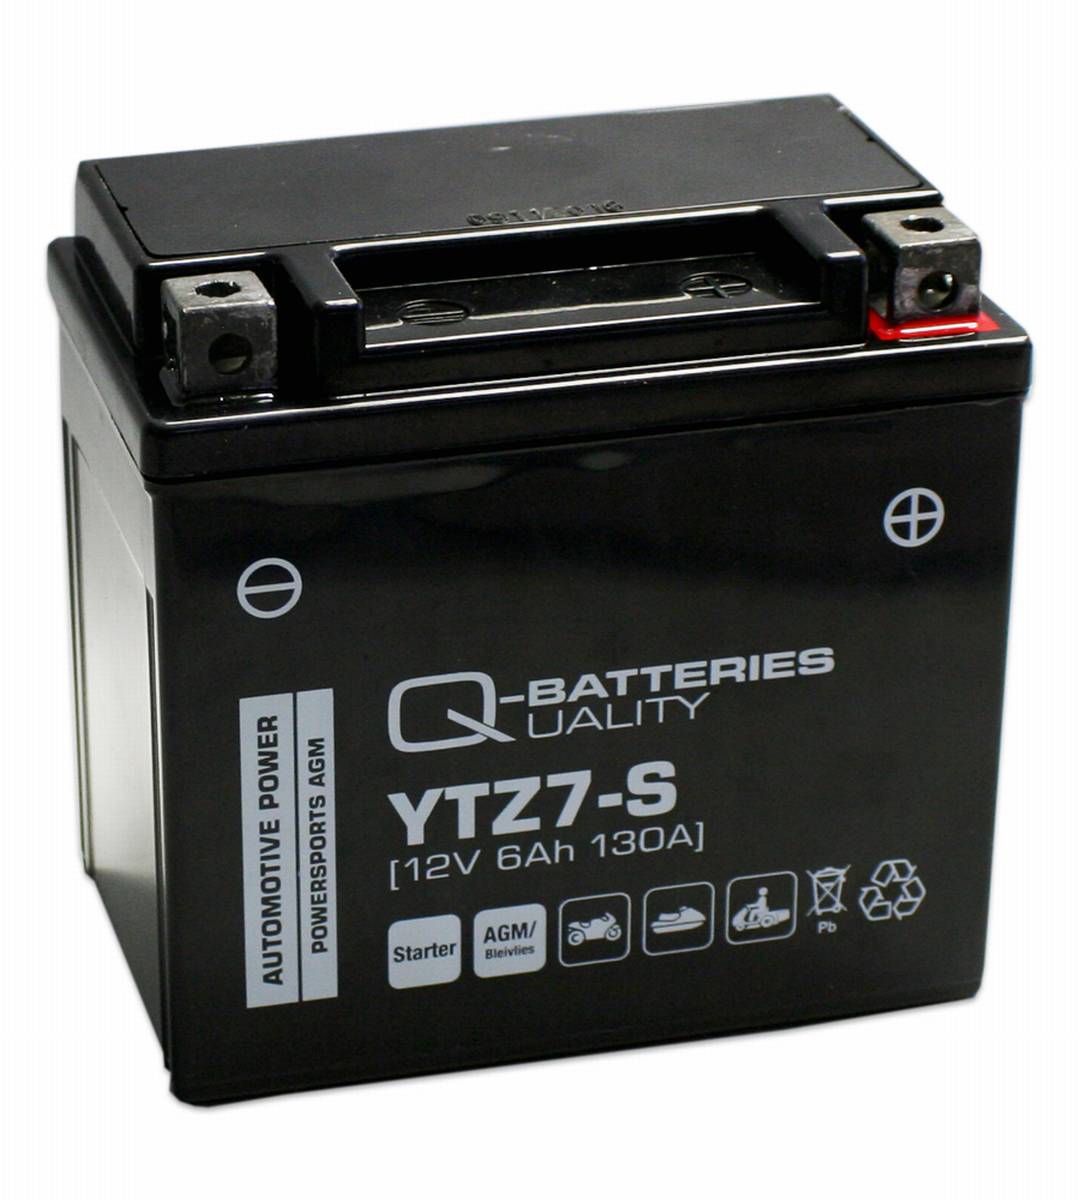 Q-Batteries Motorradbatterie 7-S 57902 AGM 12V 6Ah 130A 